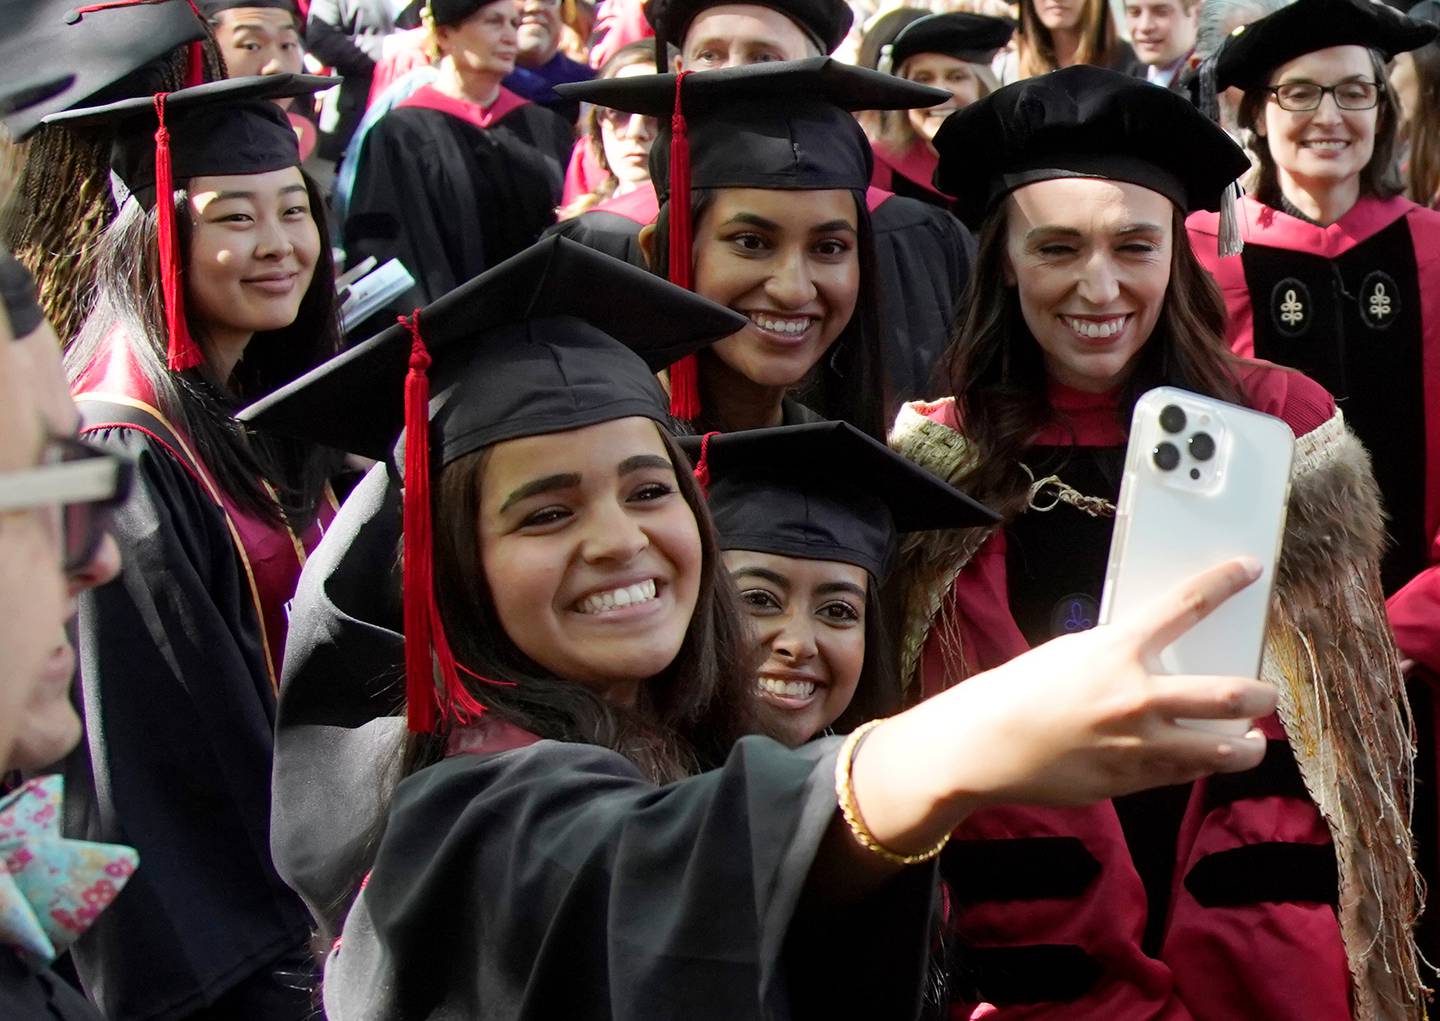 Jacinda Ardern 在参加哈佛大学第 371 届毕业典礼照片/美联社时微笑着与毕业生自拍